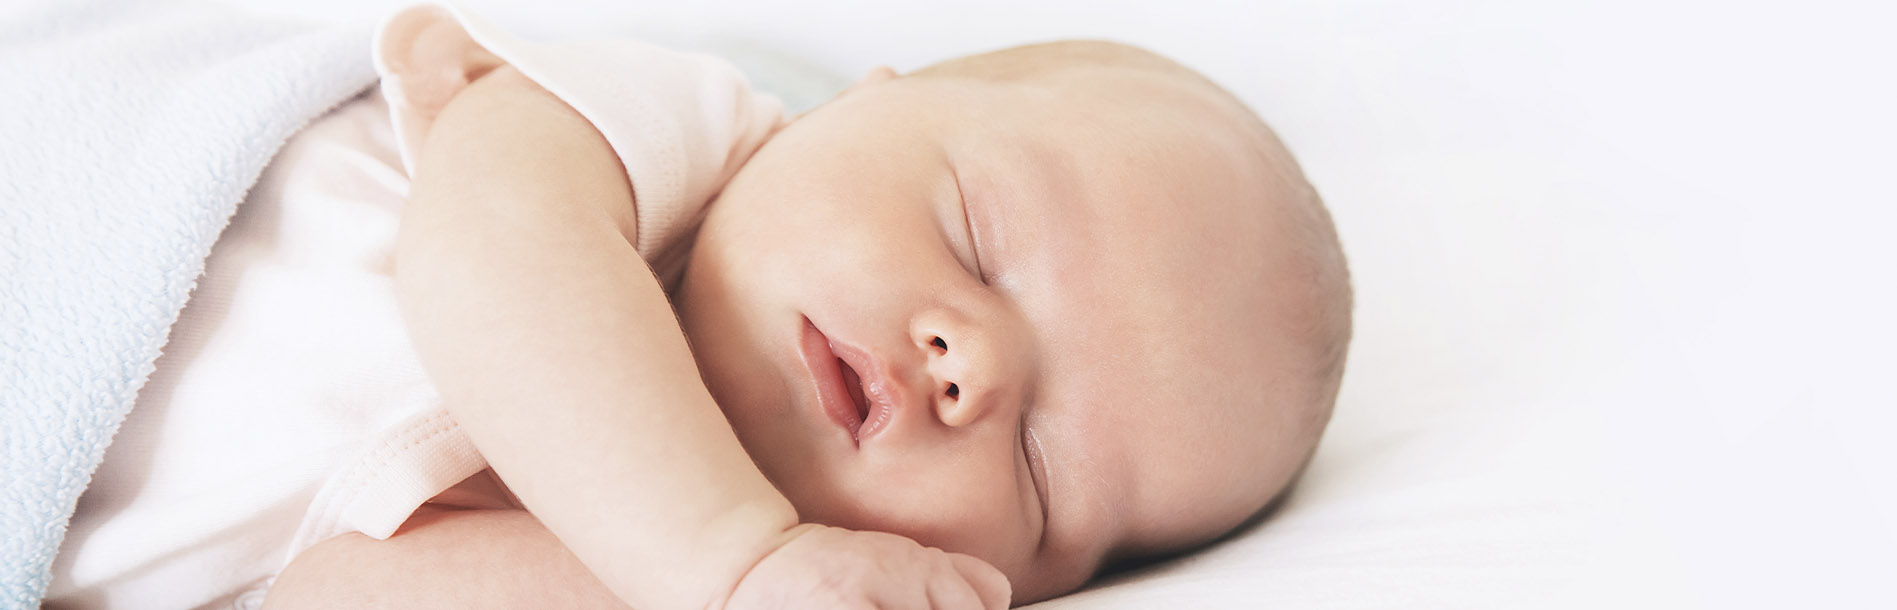 Desenvolvimento do bebê: dicas essenciais para os primeiros meses de vida dele